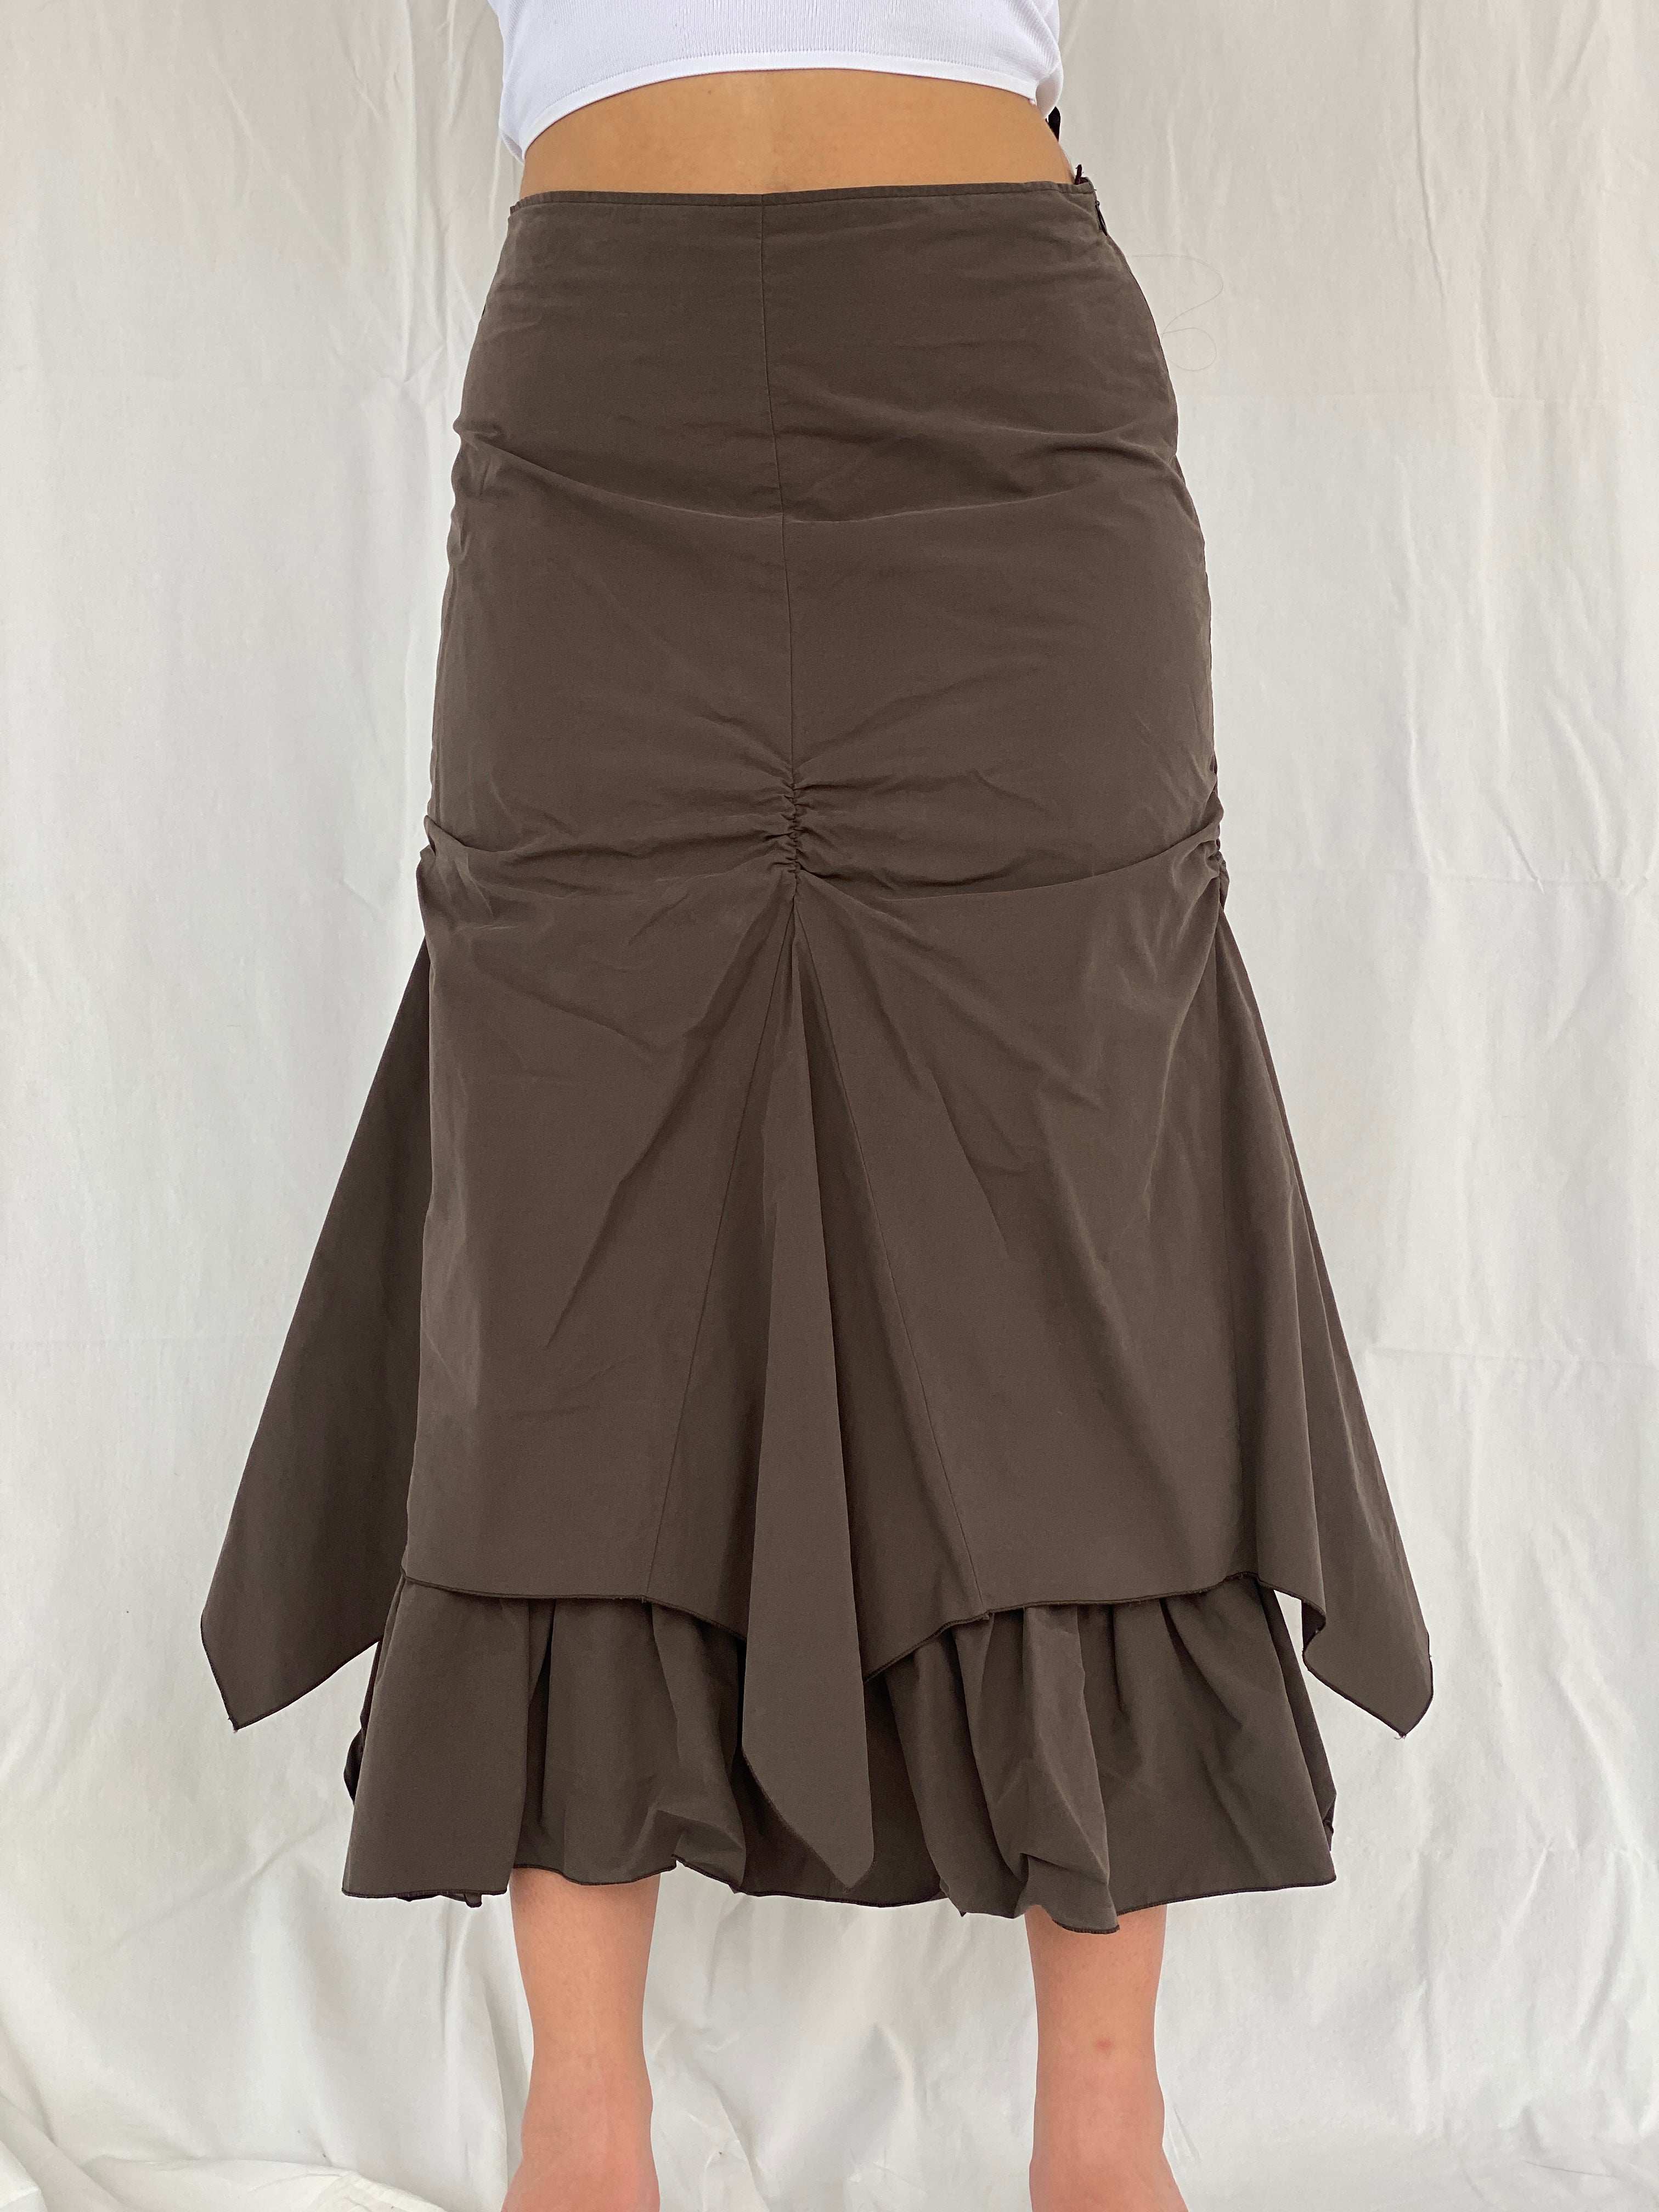 Insane Vintage 90s/00s Zaffiri Midi Ruched Skirt Size M/L